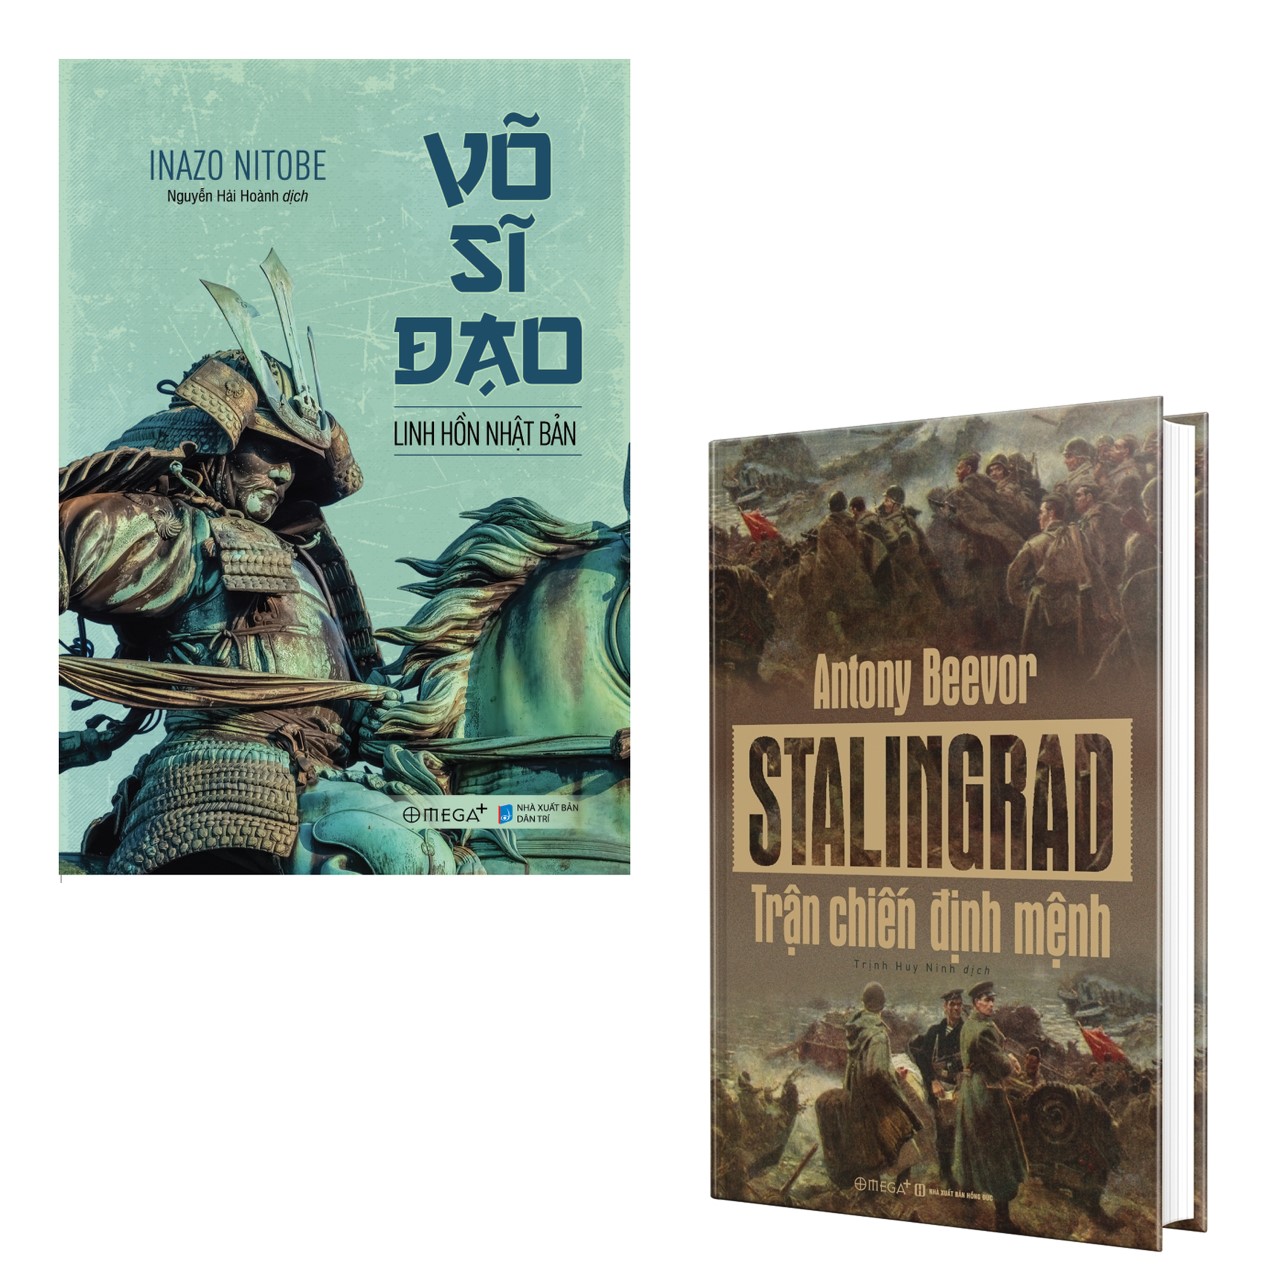 Combo Những Trận Chiến Định Mệnh: Võ Sĩ Đạo + Stalingrad - Trận Chiến Định Mệnh